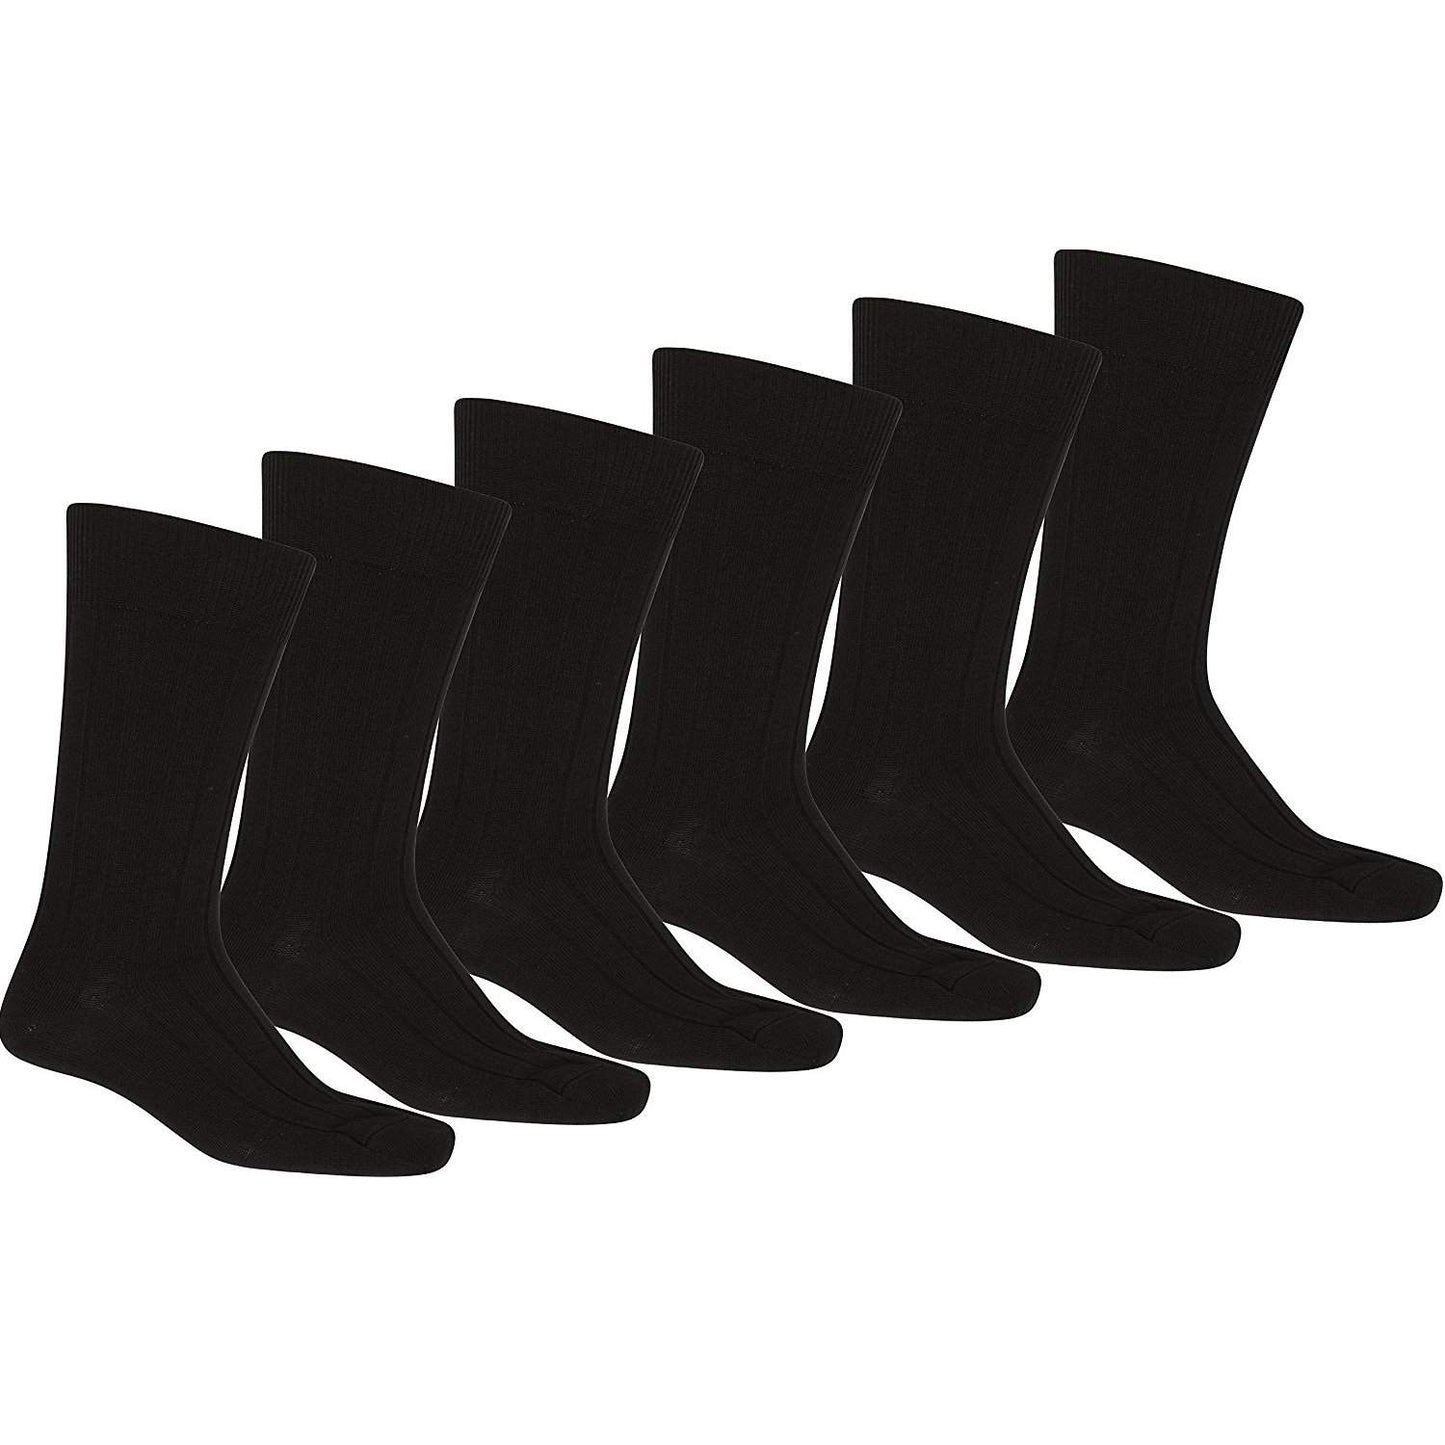 12 Pack of Daily Basic Men Black Solid Plain Dress Socks